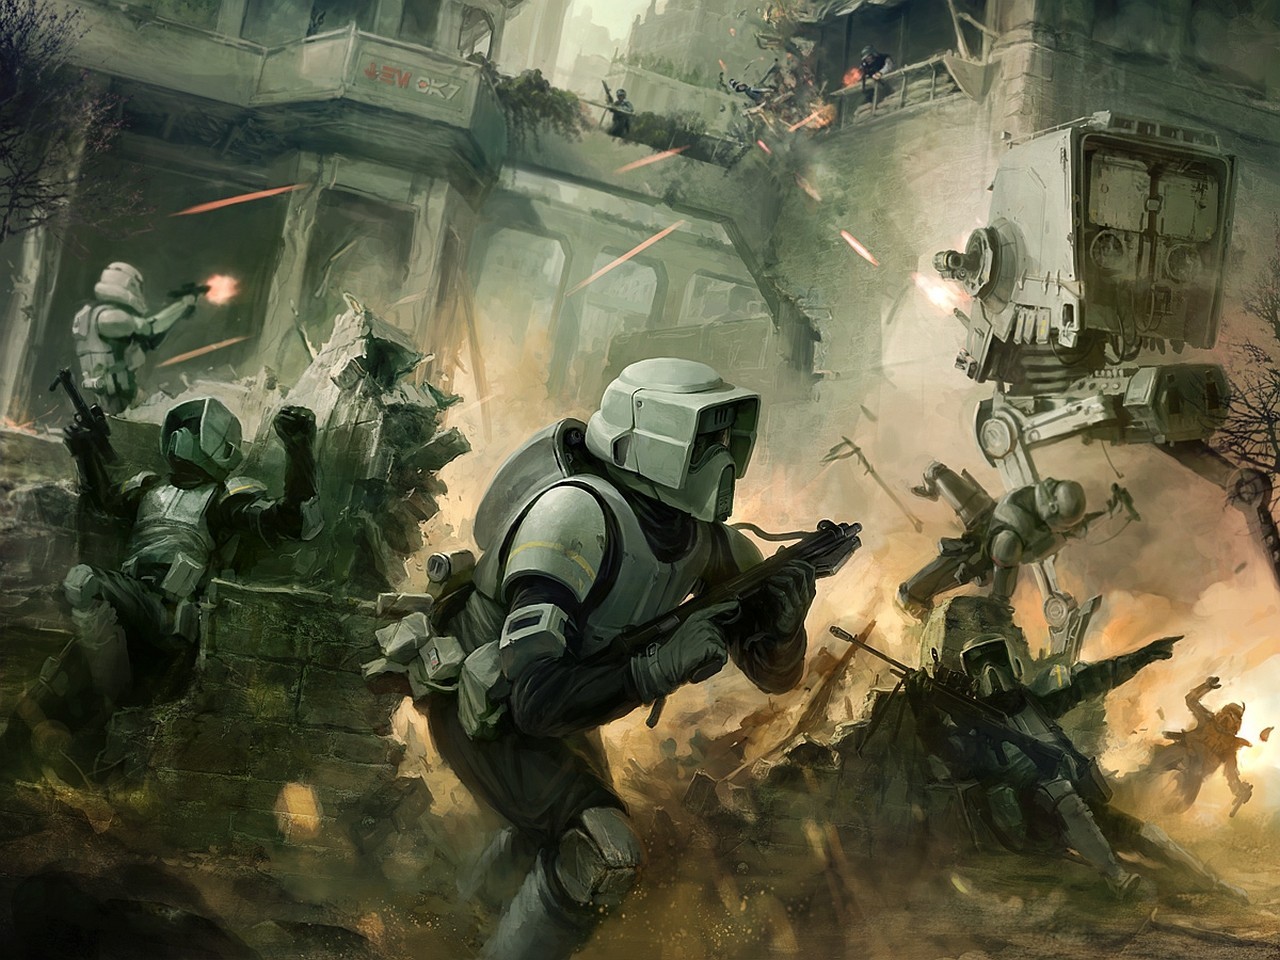 General 1280x960 Star Wars science fiction fan art stormtrooper war battle AT-ST AT-ST Walker scout trooper